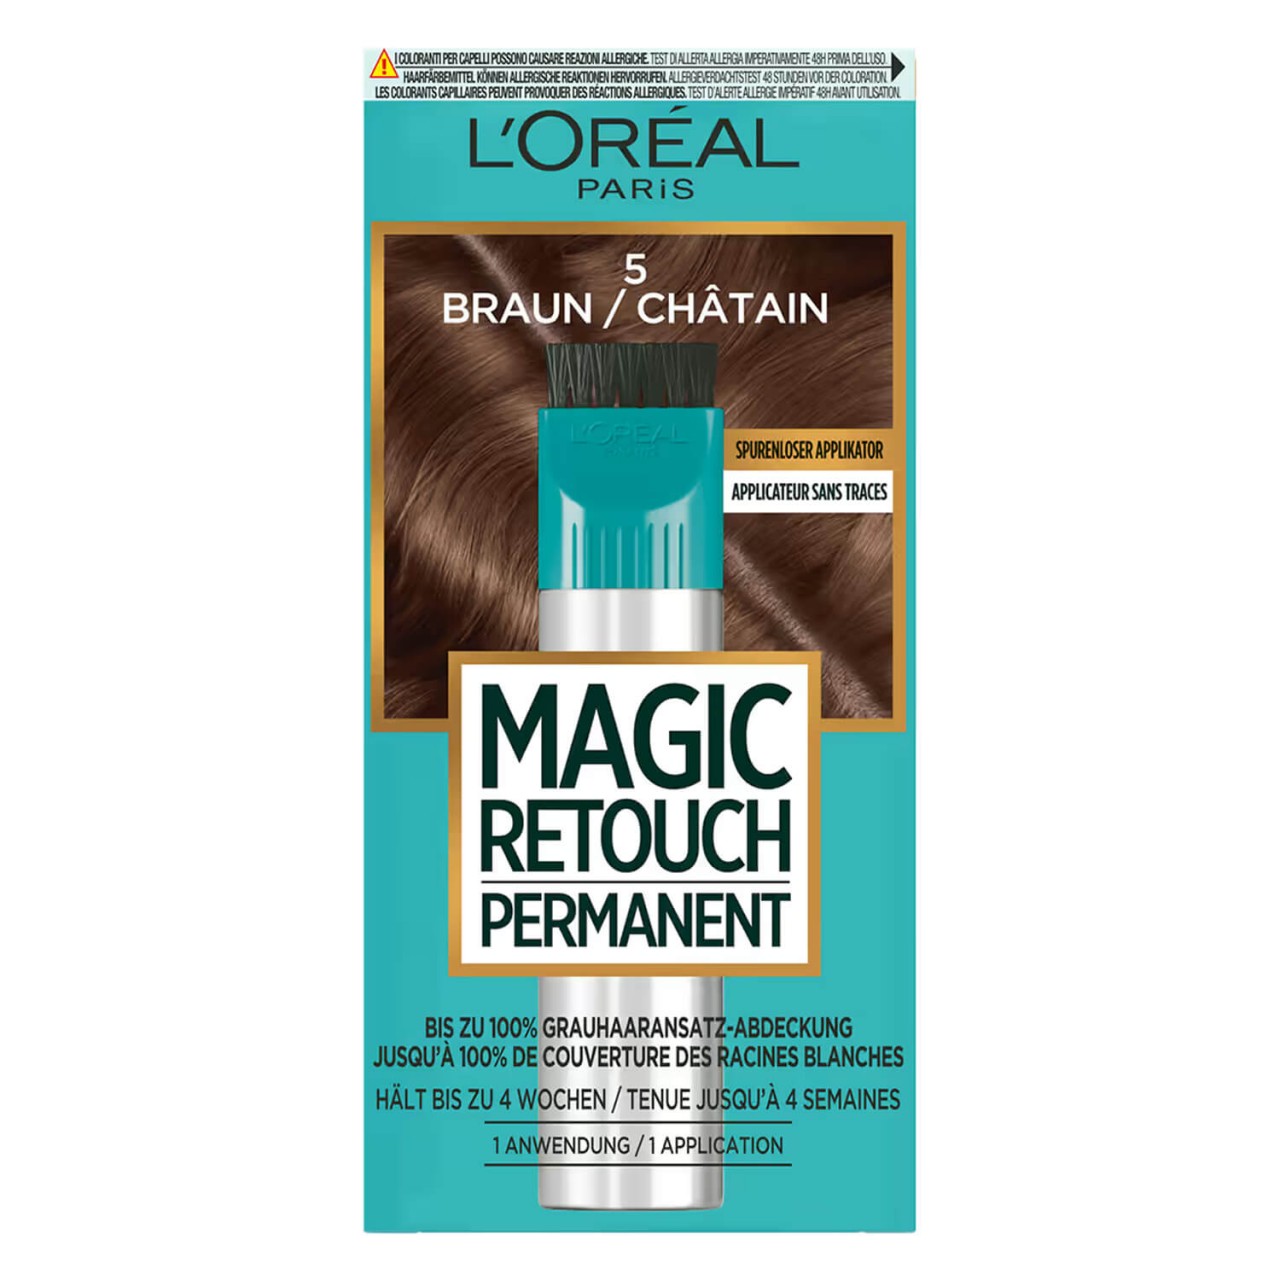 LOréal Magic Retouch - Permanent Braun von L'Oréal Paris